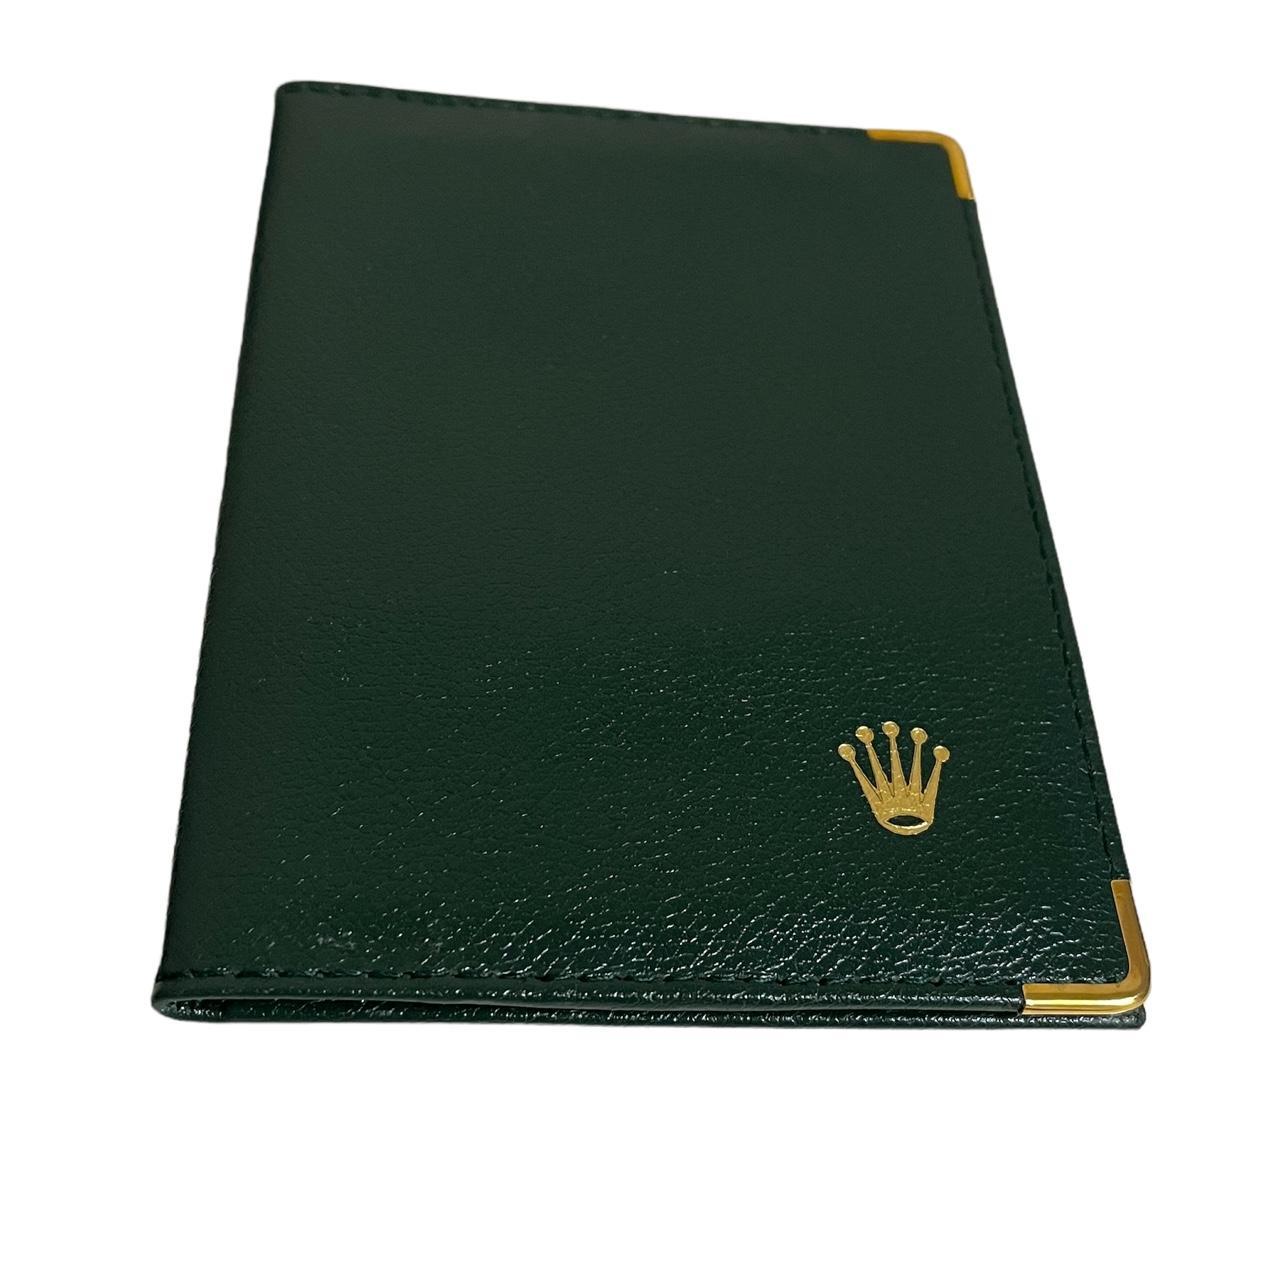 Product Image 1 - Rolex Passport Case Cardholder

Super rare